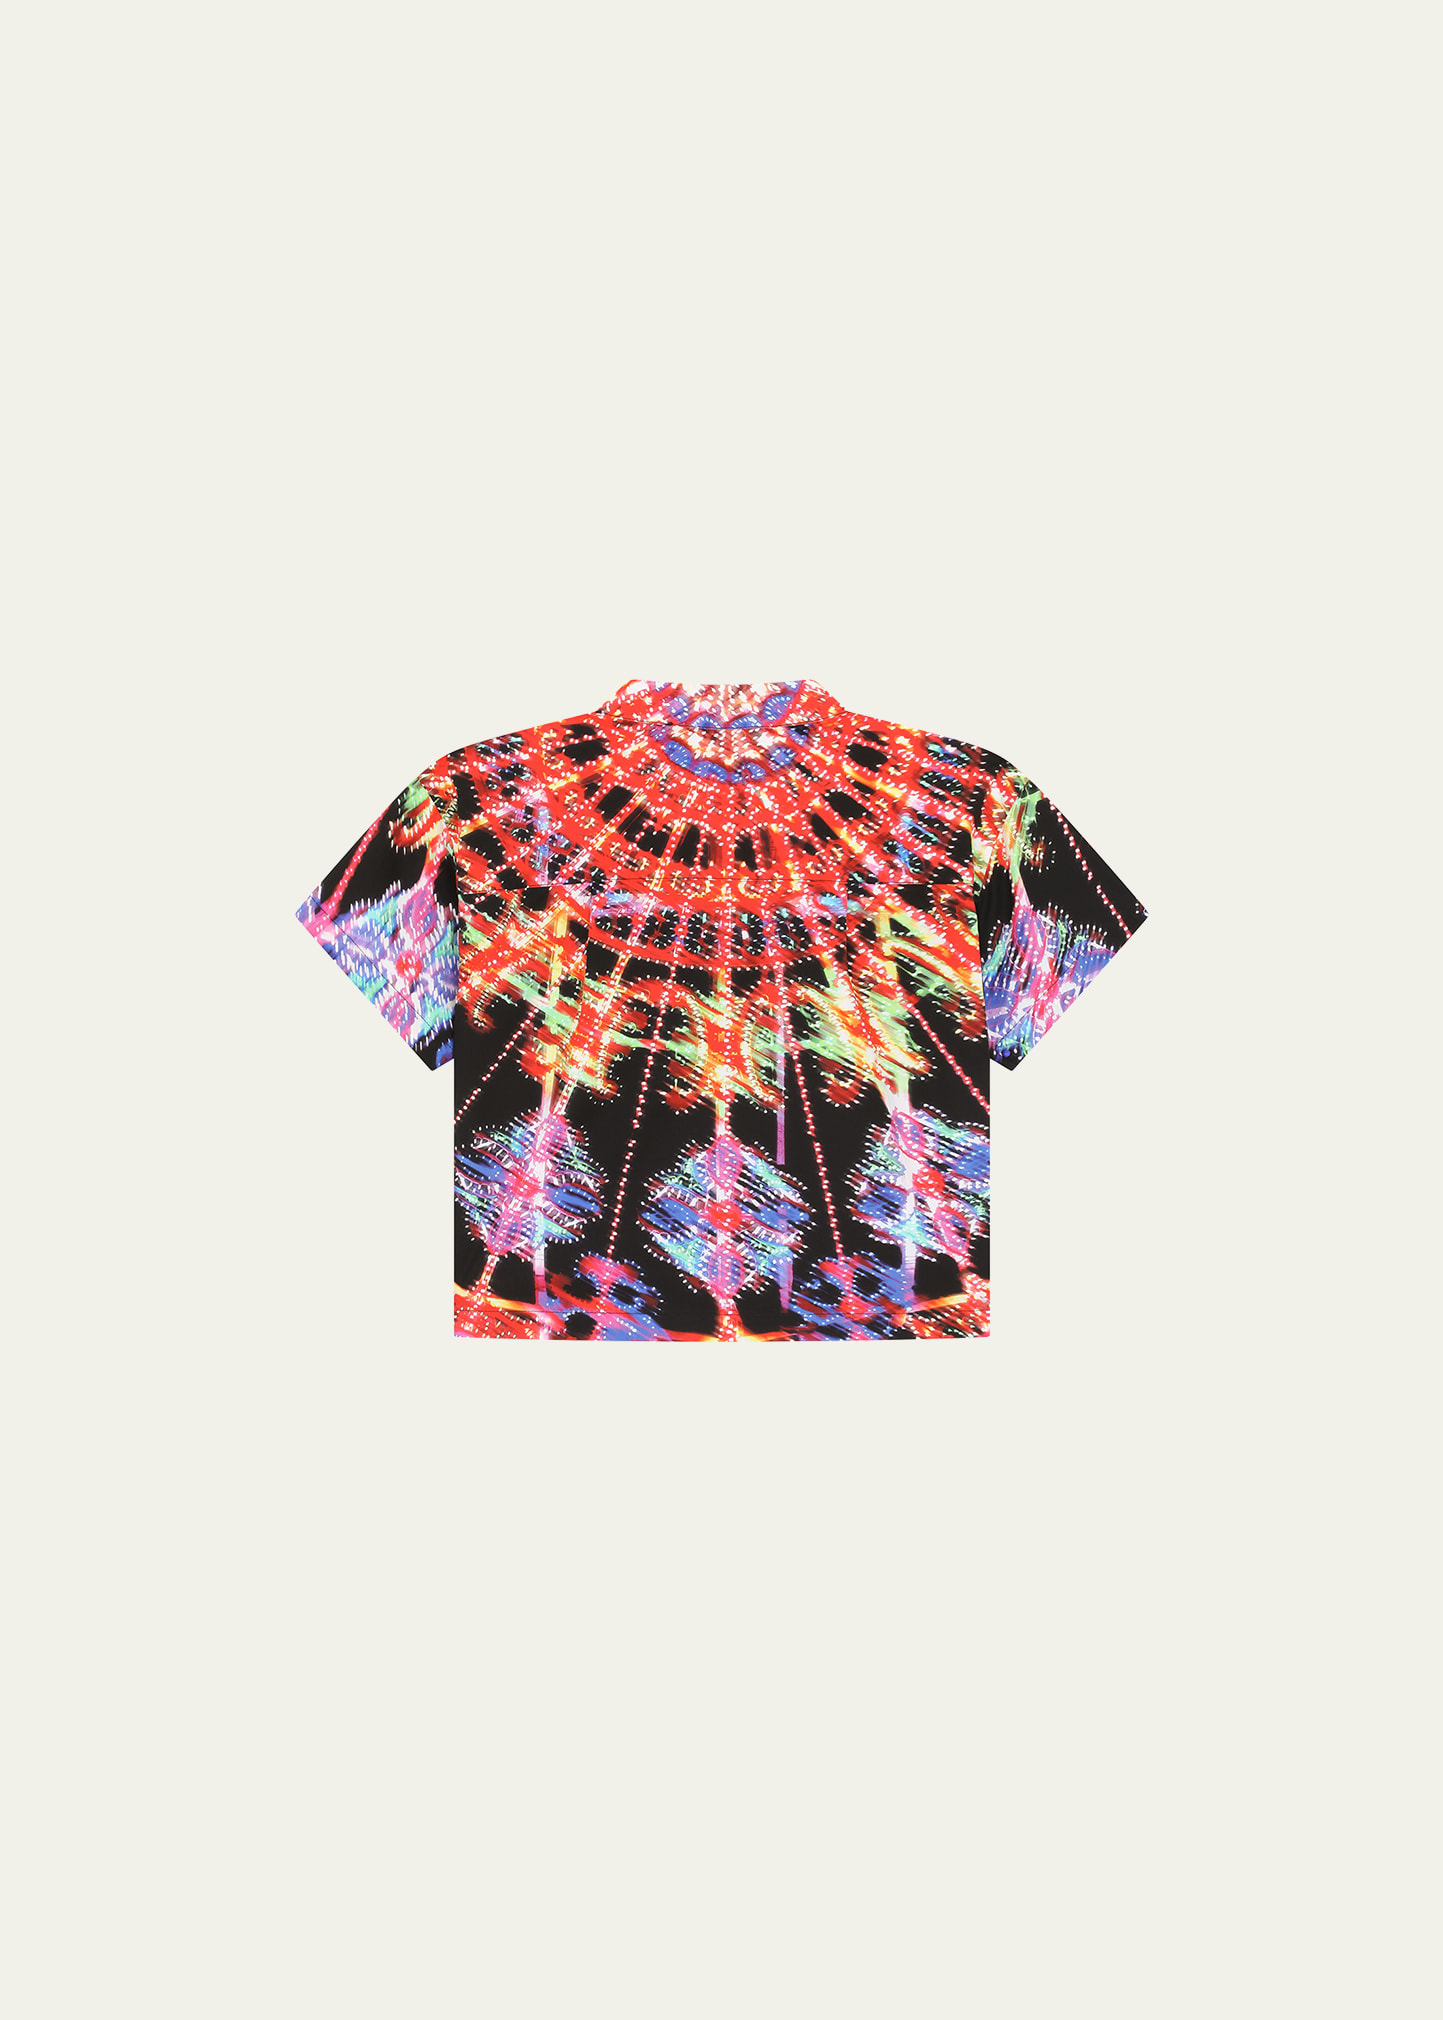 Dolce&Gabbana Kid's Luminary-Print Poplin Shirt, Size 8-12